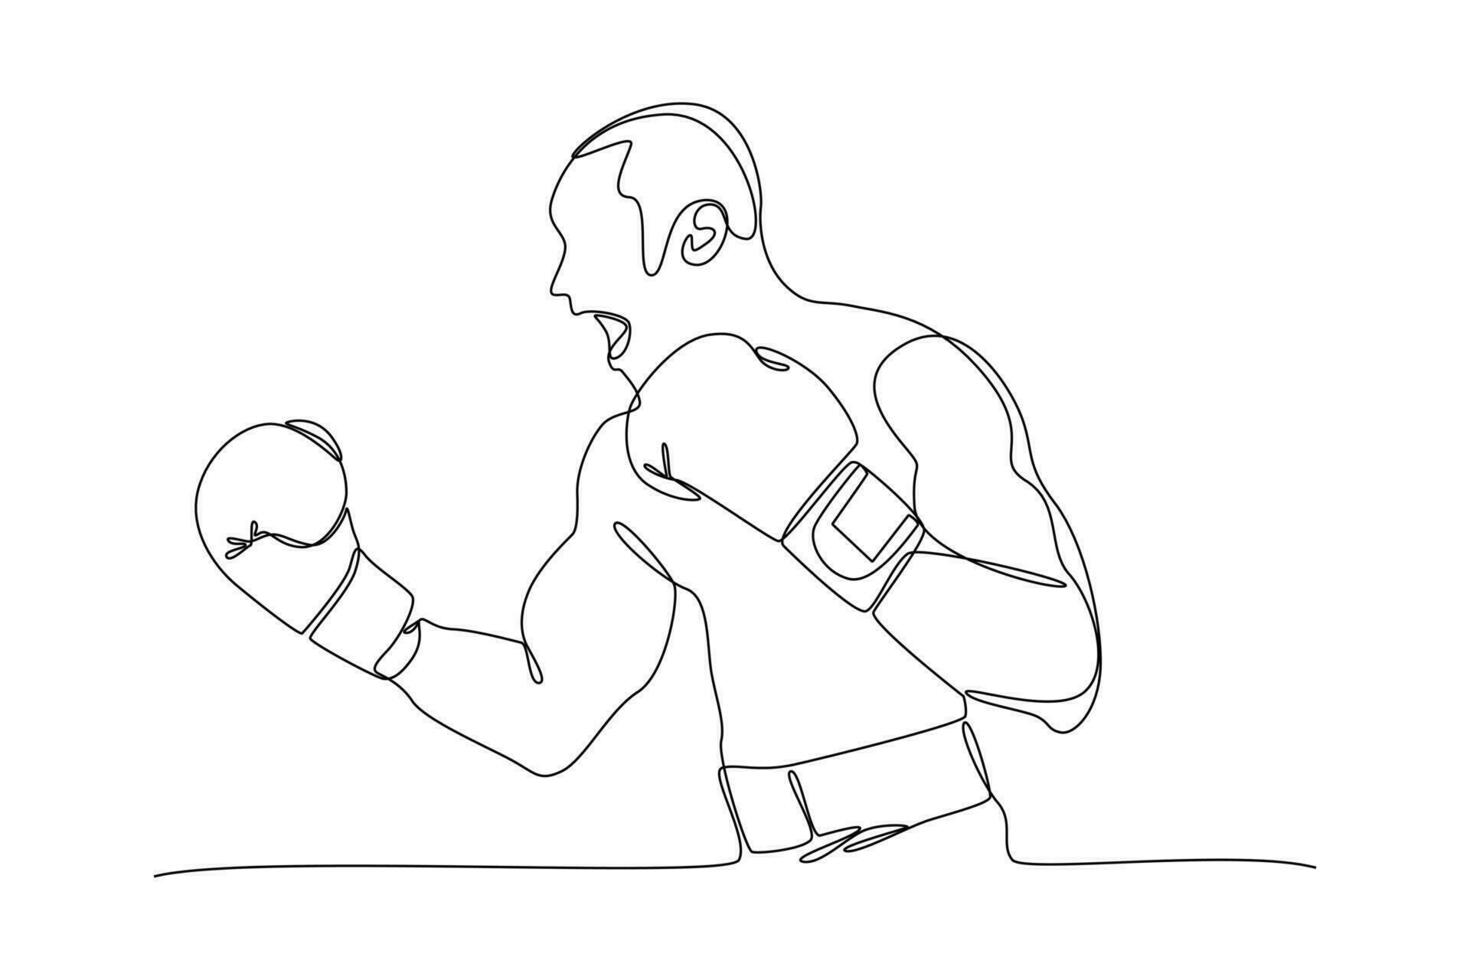 kontinuerlig ett linje teckning boxare, muai thai fighters. boxning, sporter, träna begrepp. klotter vektor illustration.